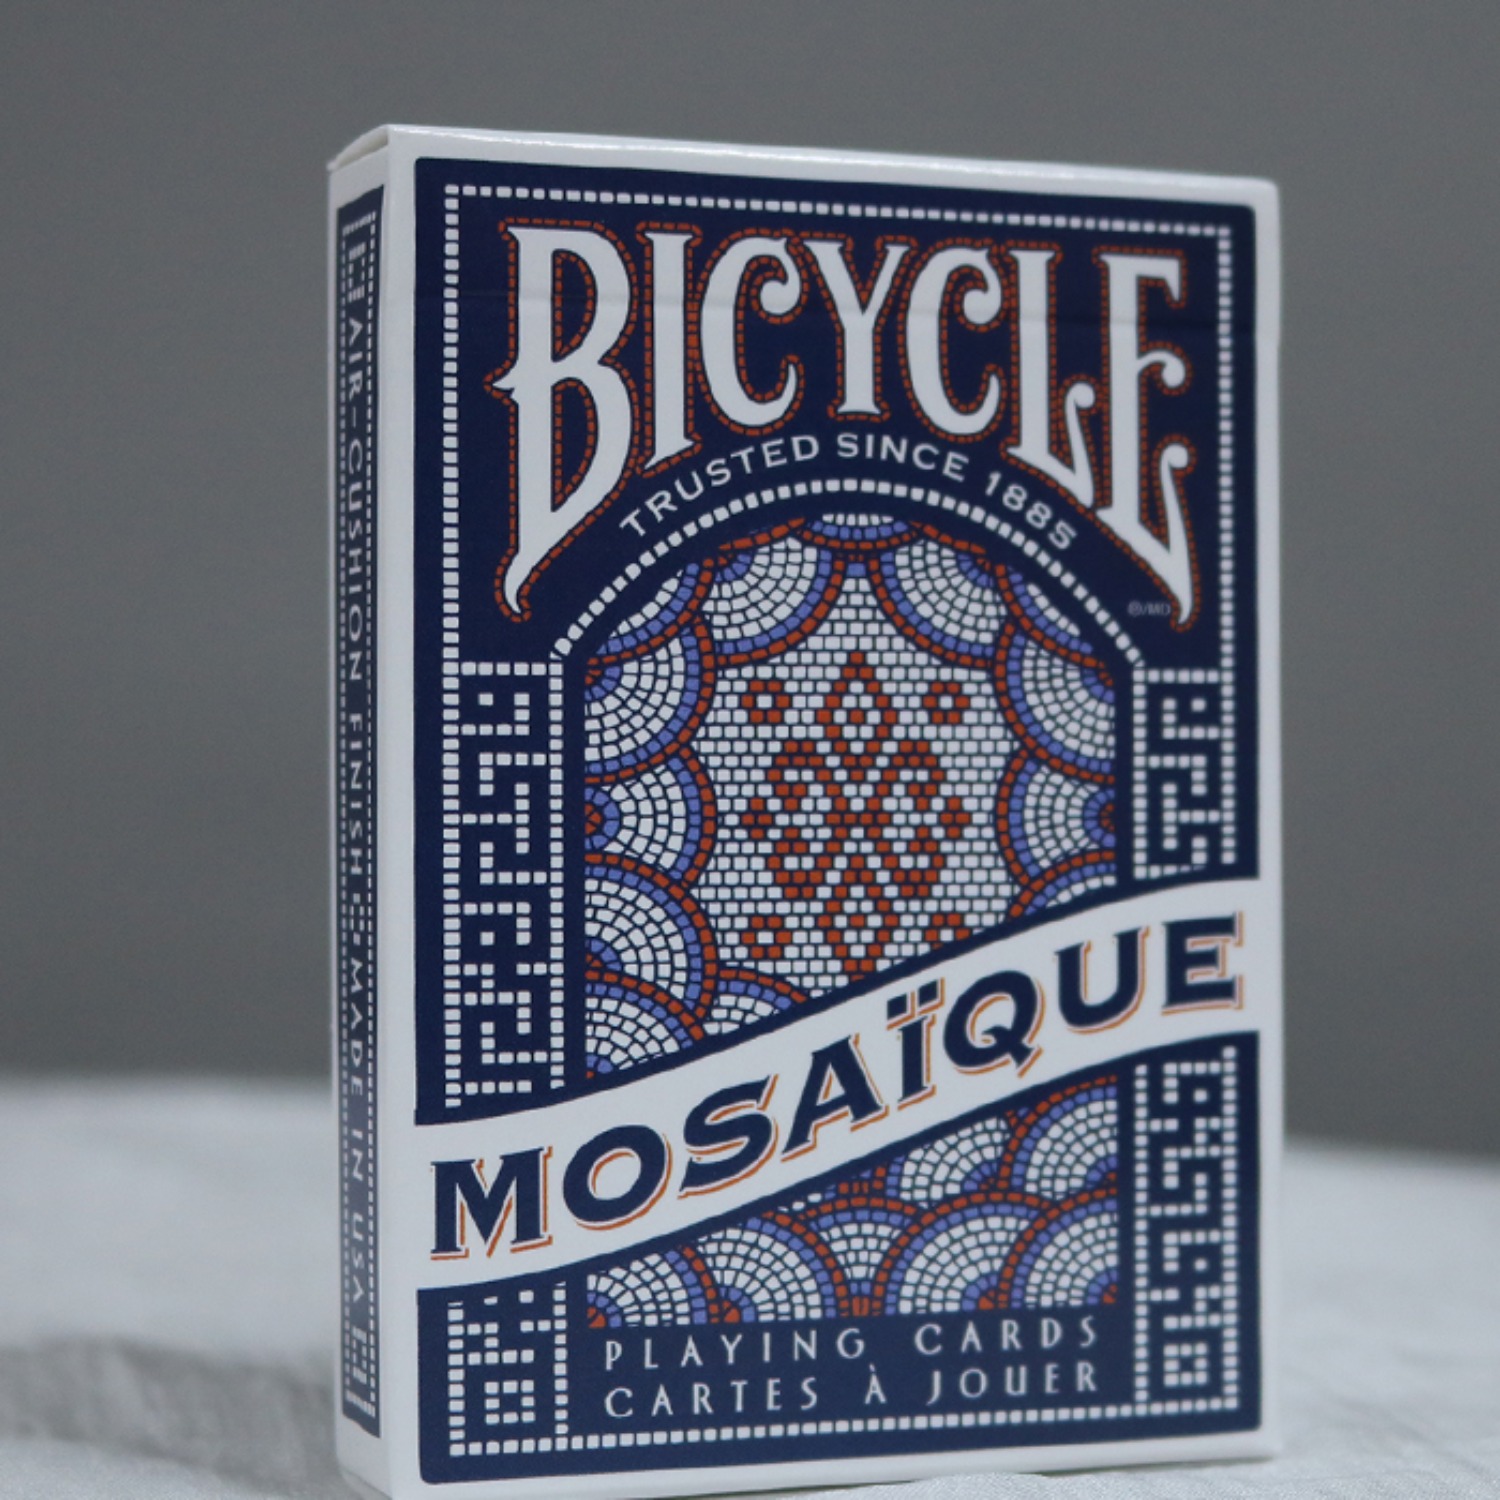 [모자이크덱] Bicycle Mosaique